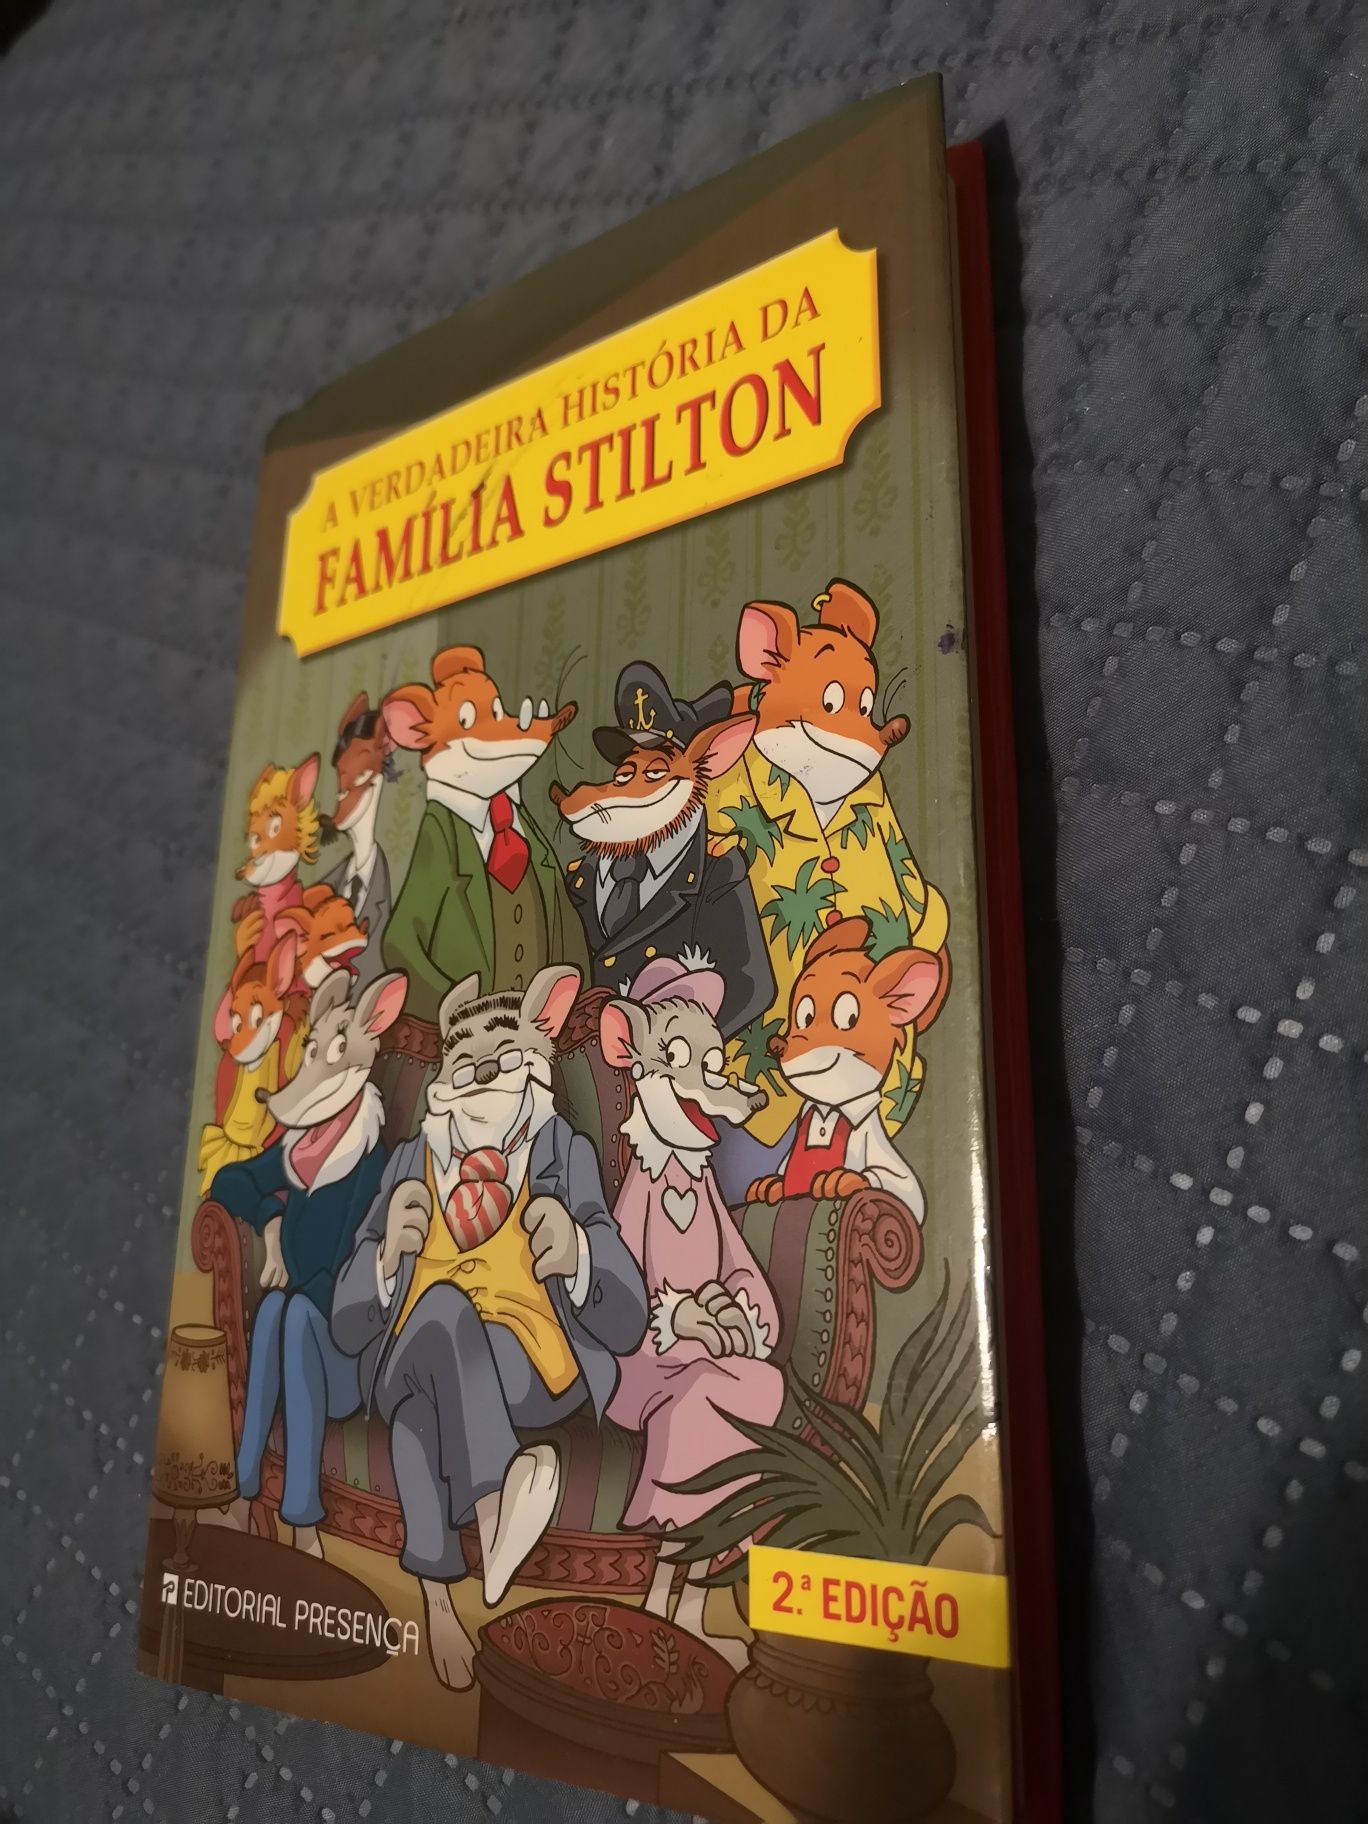 Livro " A verdadeira historia da família Stilton"